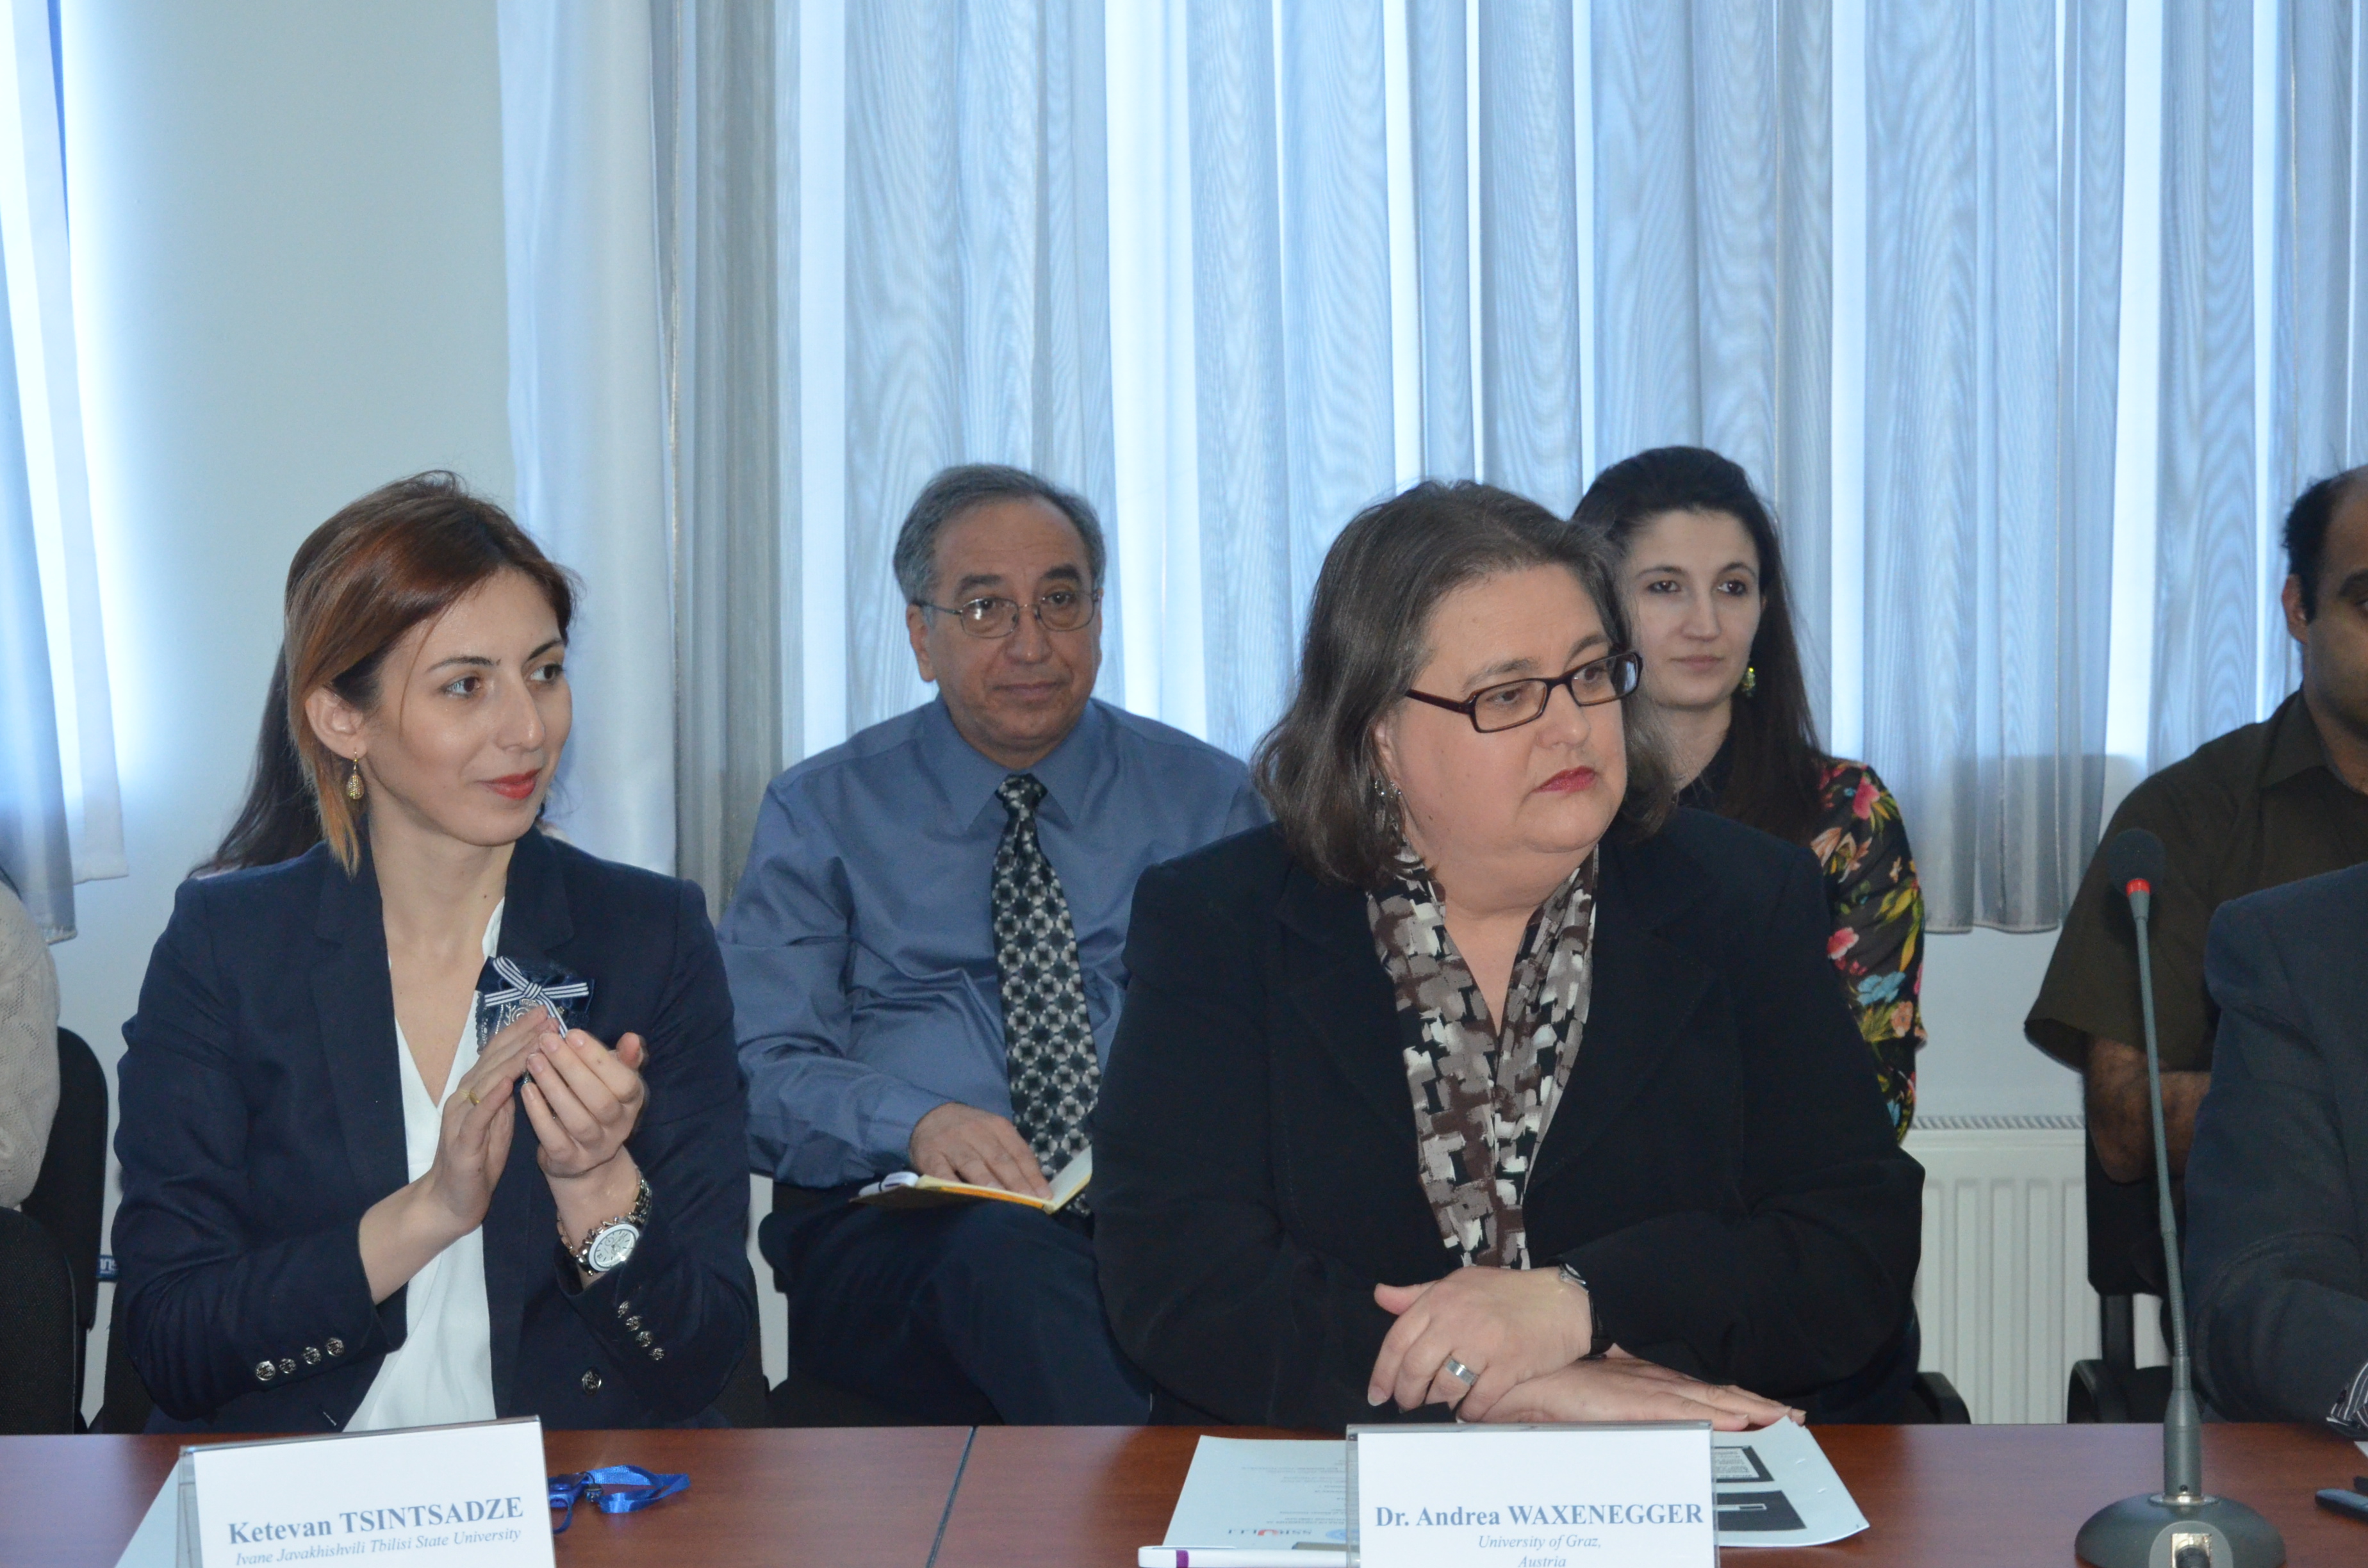 16 April 2015 ” Seminar on ULLL in Baku “